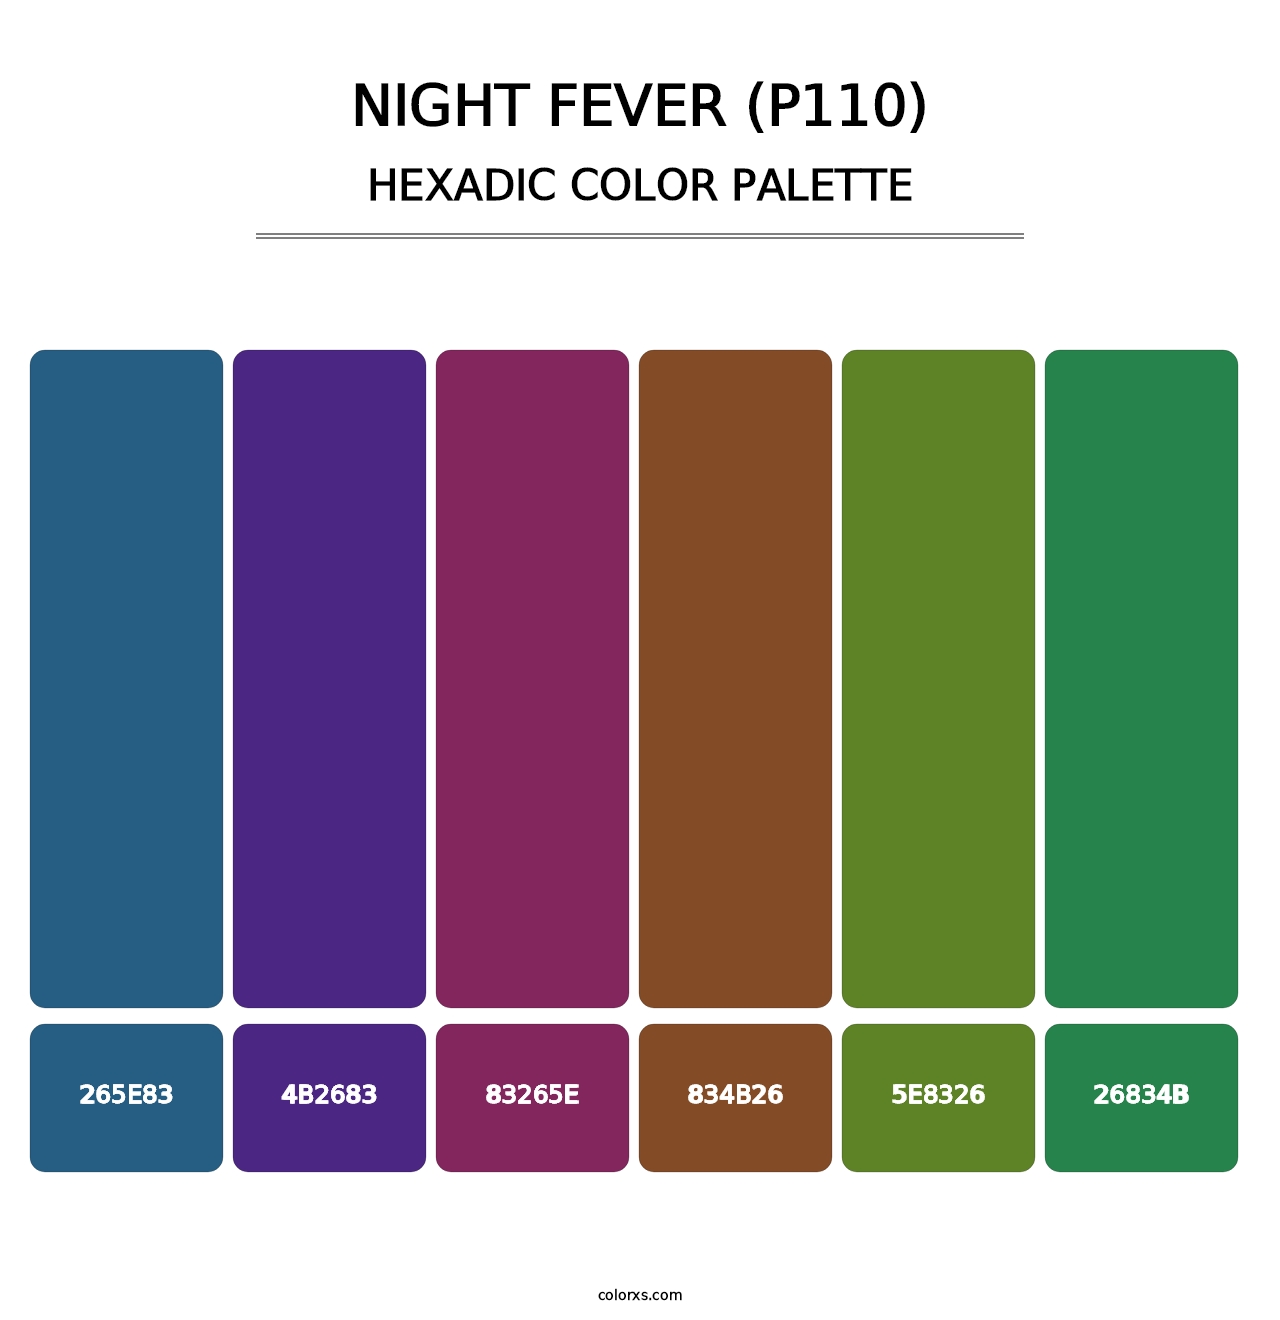 Night Fever (P110) - Hexadic Color Palette